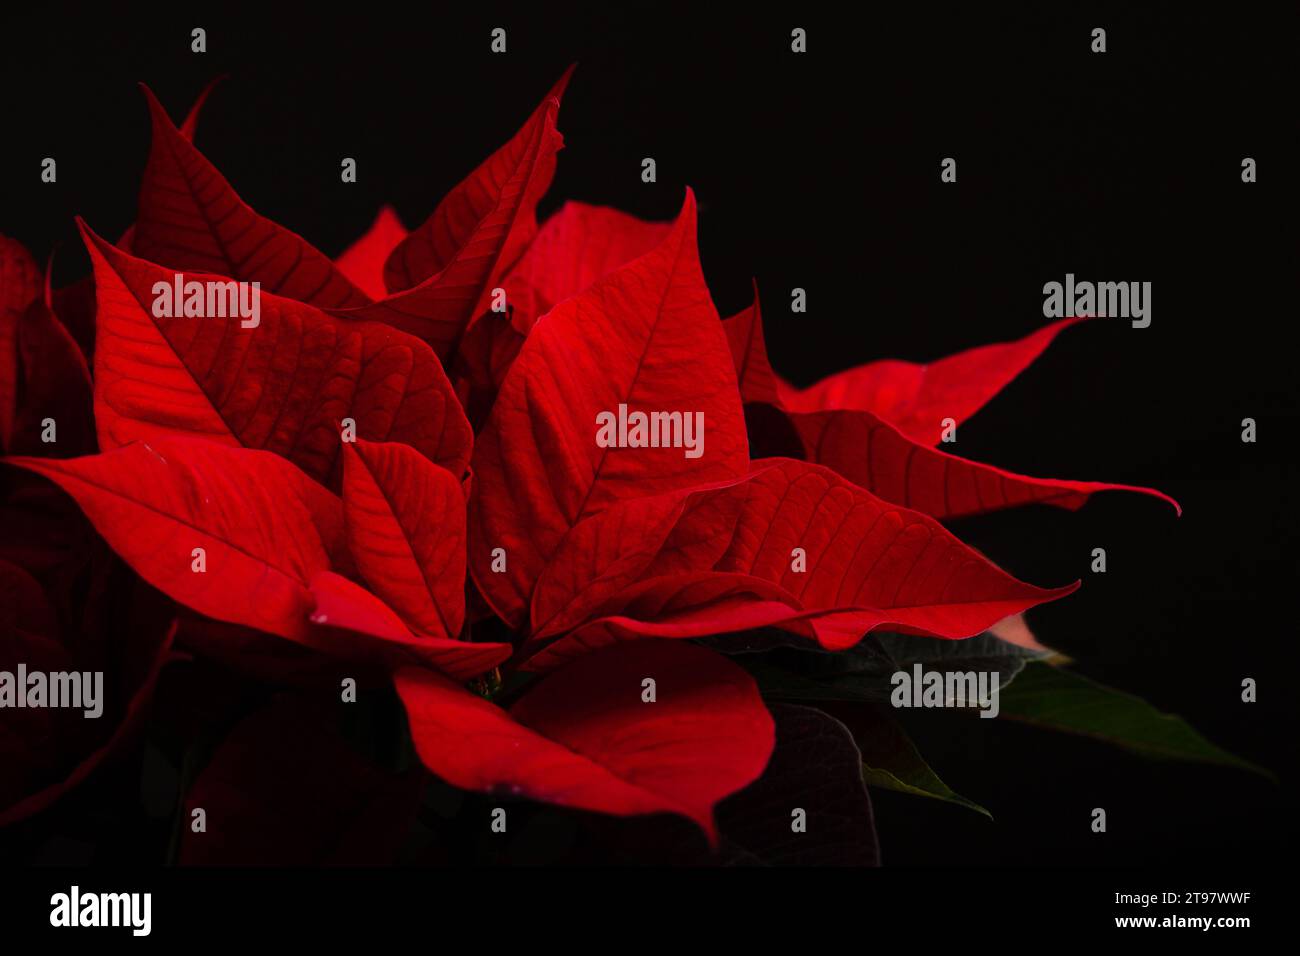 rouge poinsettia fleur closeup sur fond sombre, hiver concept de noël Banque D'Images